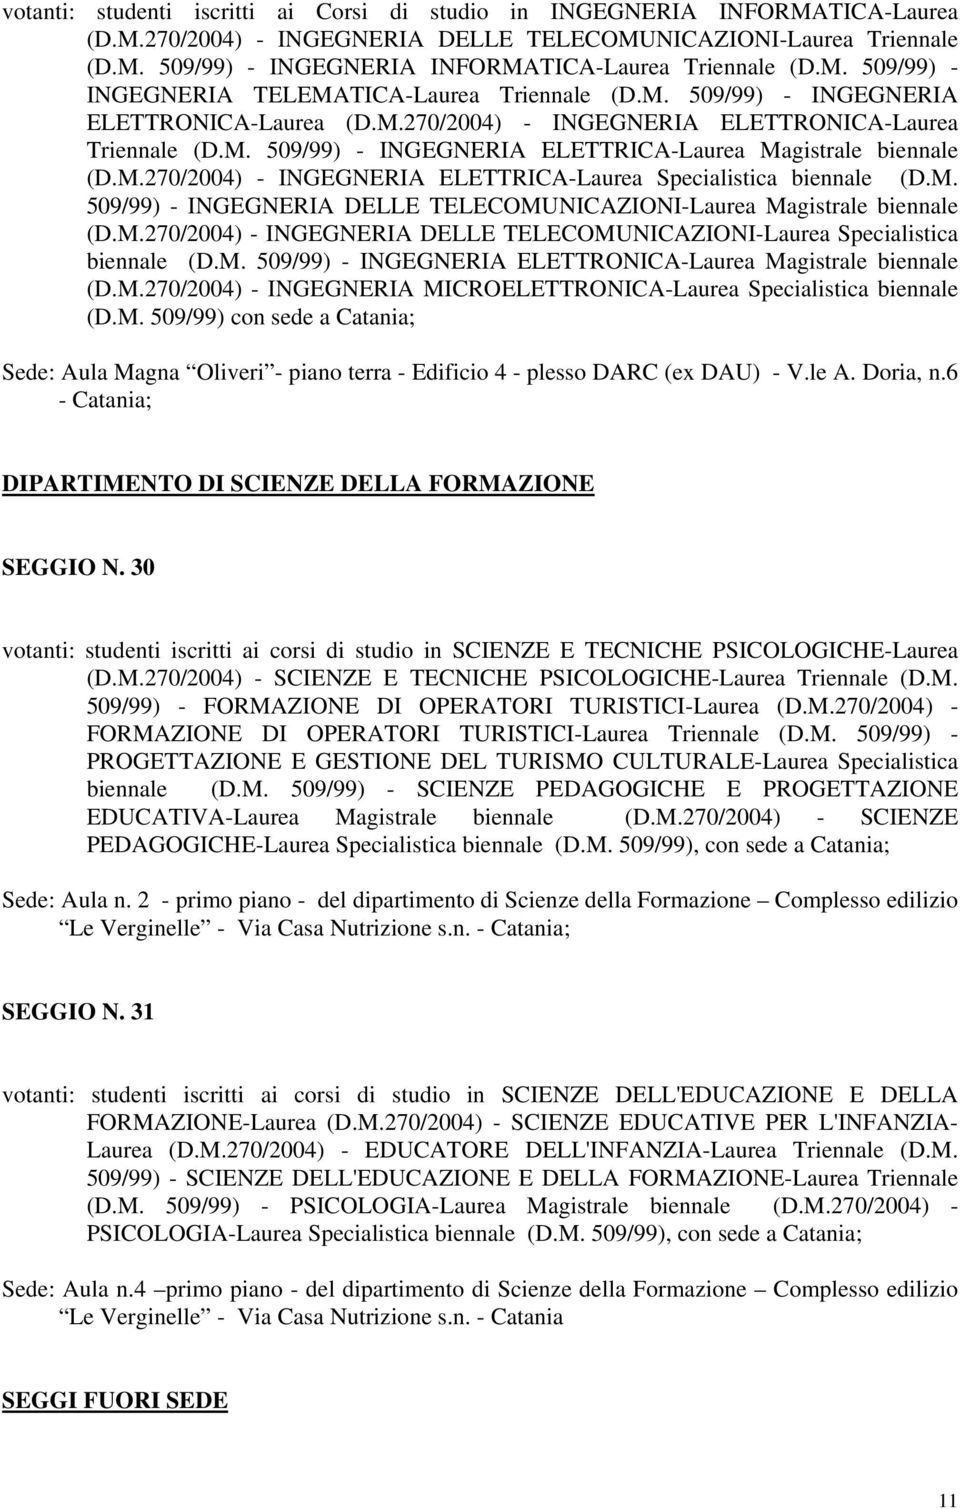 M.270/2004) - INGEGNERIA ELETTRICA-Laurea Specialistica biennale (D.M. 509/99) - INGEGNERIA DELLE TELECOMUNICAZIONI-Laurea Magistrale biennale (D.M.270/2004) - INGEGNERIA DELLE TELECOMUNICAZIONI-Laurea Specialistica biennale (D.